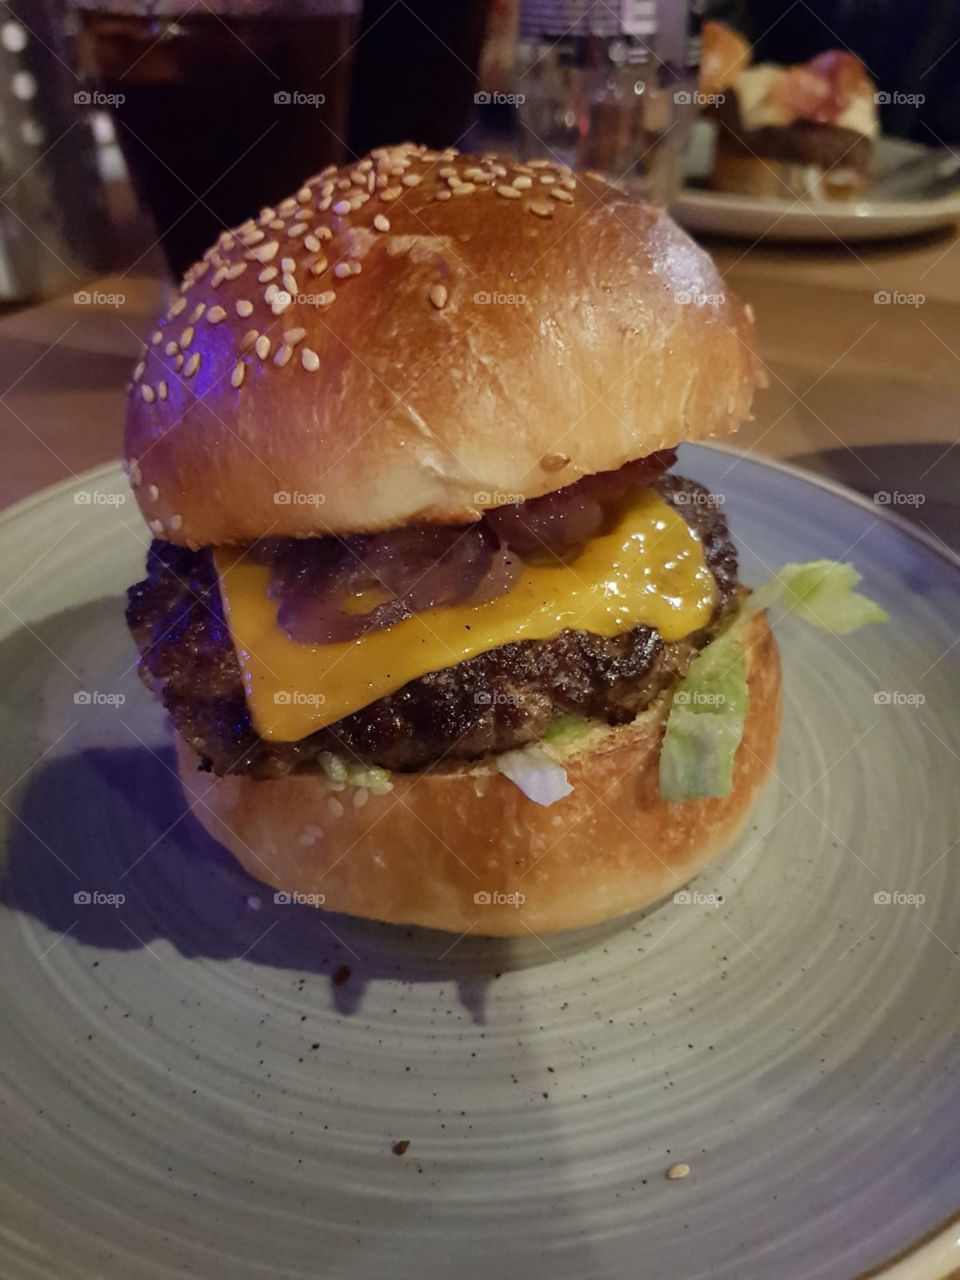 Delicious, juicy burger!